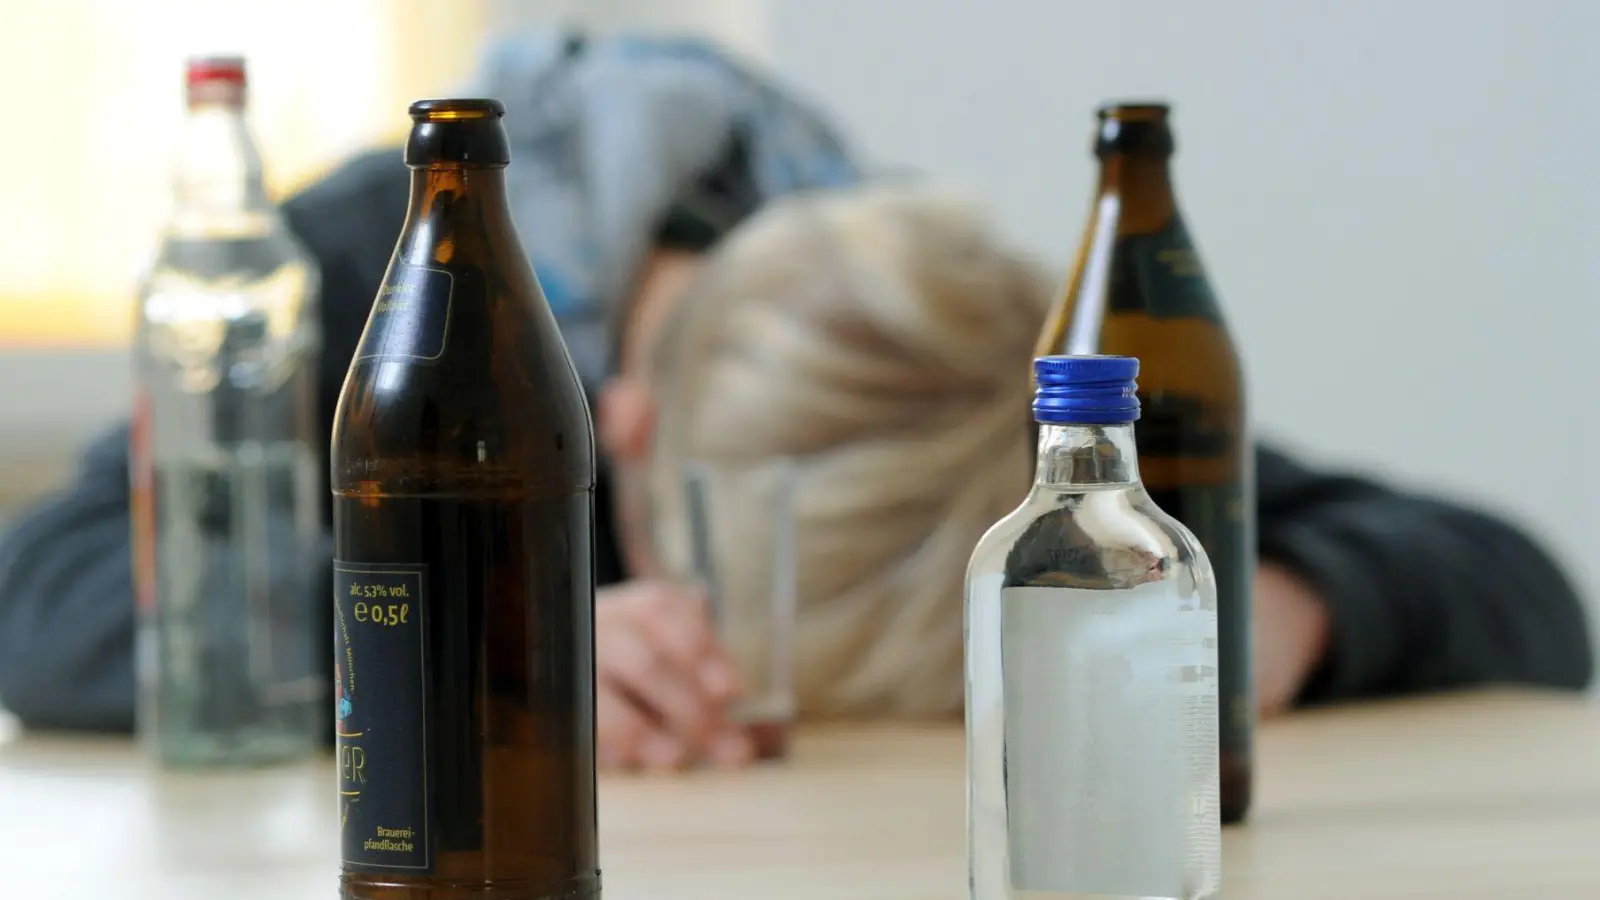 Aua, das gibt morgen Kopfschmerzen. Eltern sprechen ungesundes Trinkverhalten ihrer Kinder besser erst an, wenn diese wieder nüchtern sind. (Foto: Tobias Hase/dpa/dpa-tmn)